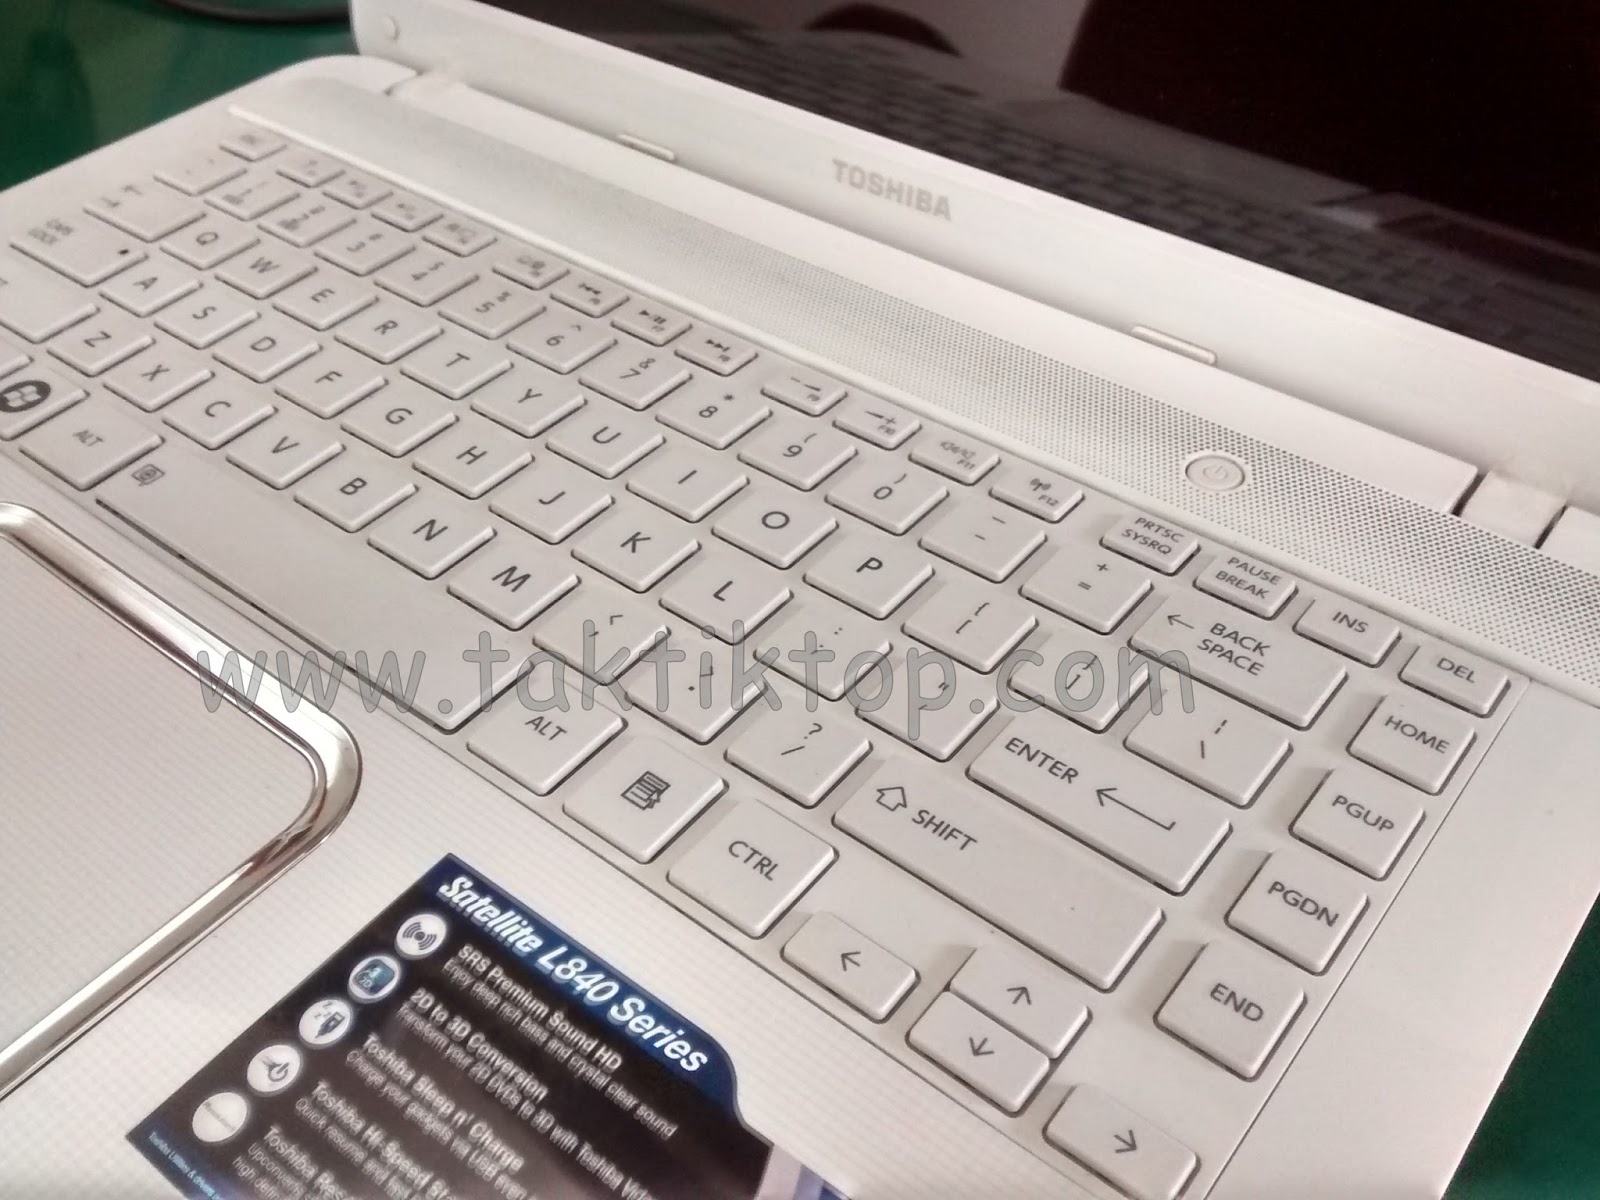 Cara Mengatasi Keyboard Laptop Yang Mencet Sendiri